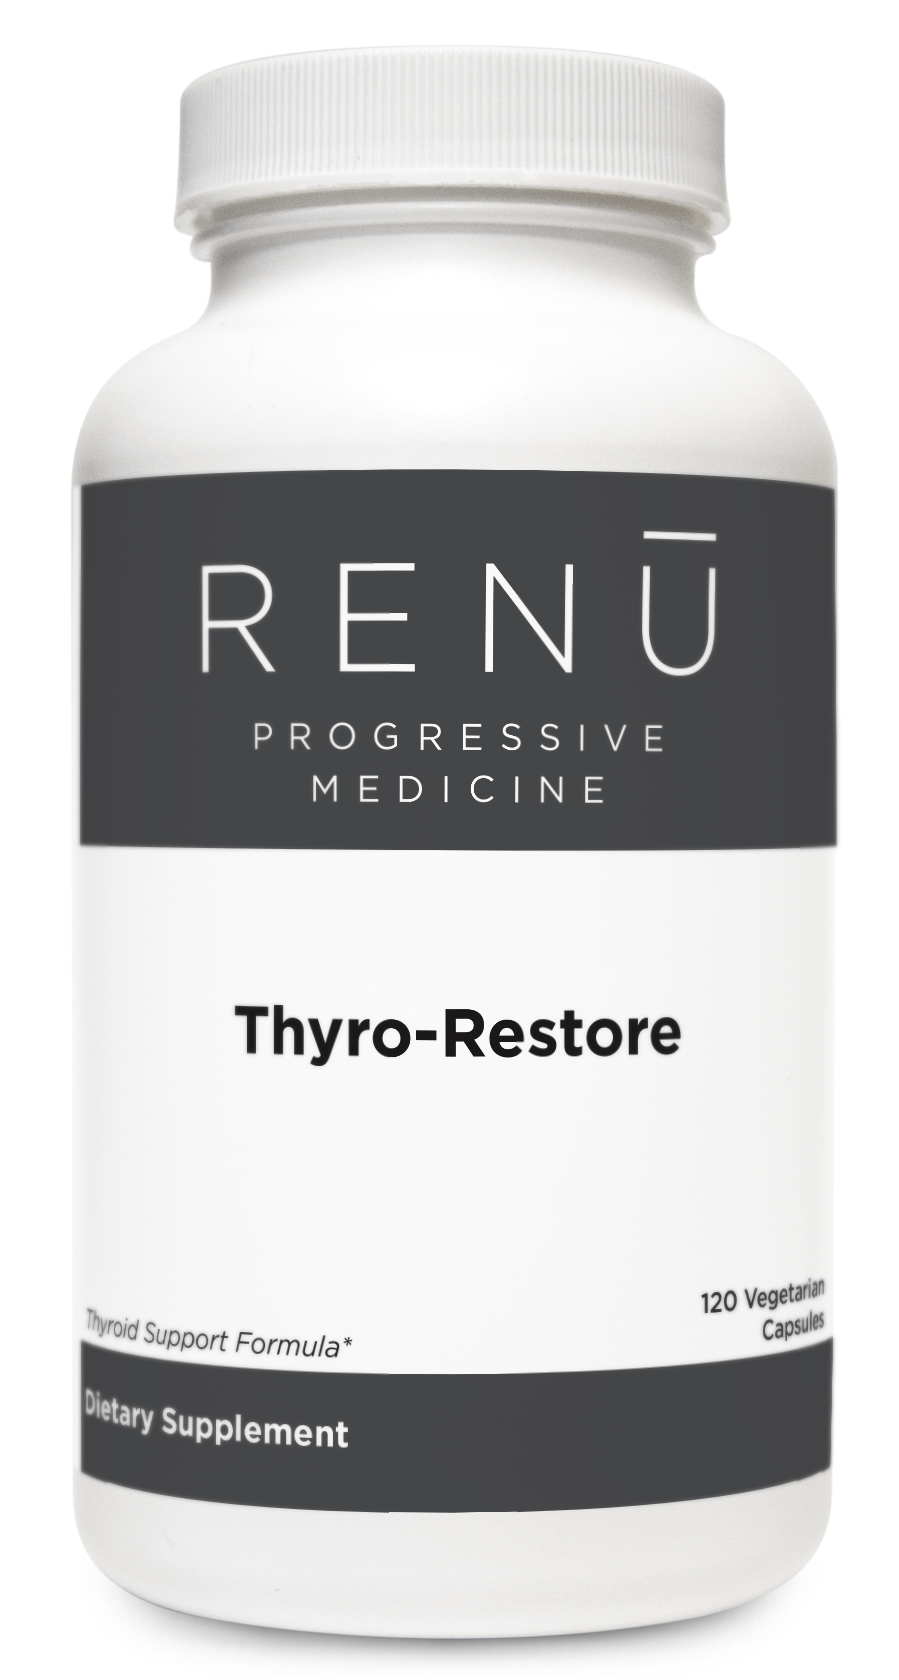 Thyro-Restore